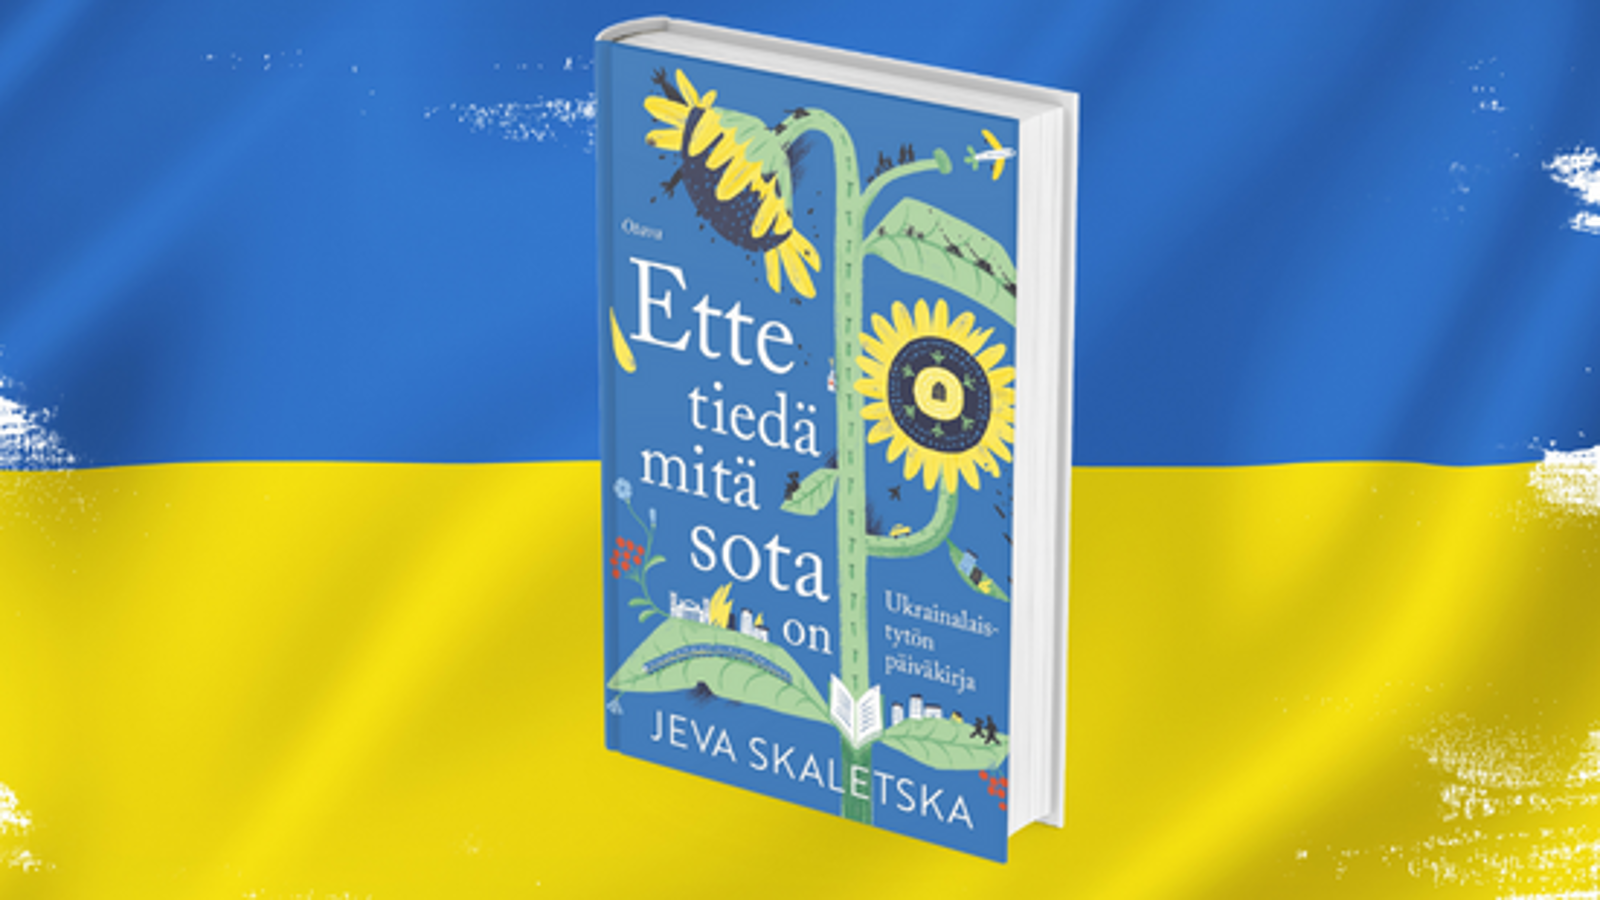 Kuvassa on taustalla Ukrainen sini-keltainen lippu. Sen päällä on vinottain kirja, jonka kannessa on iso piirretty auringonkukka. Kannessa on kirjan nimi Ette tiedä mitä sota on ja alla kirjoittaja Jeva Skaletska.